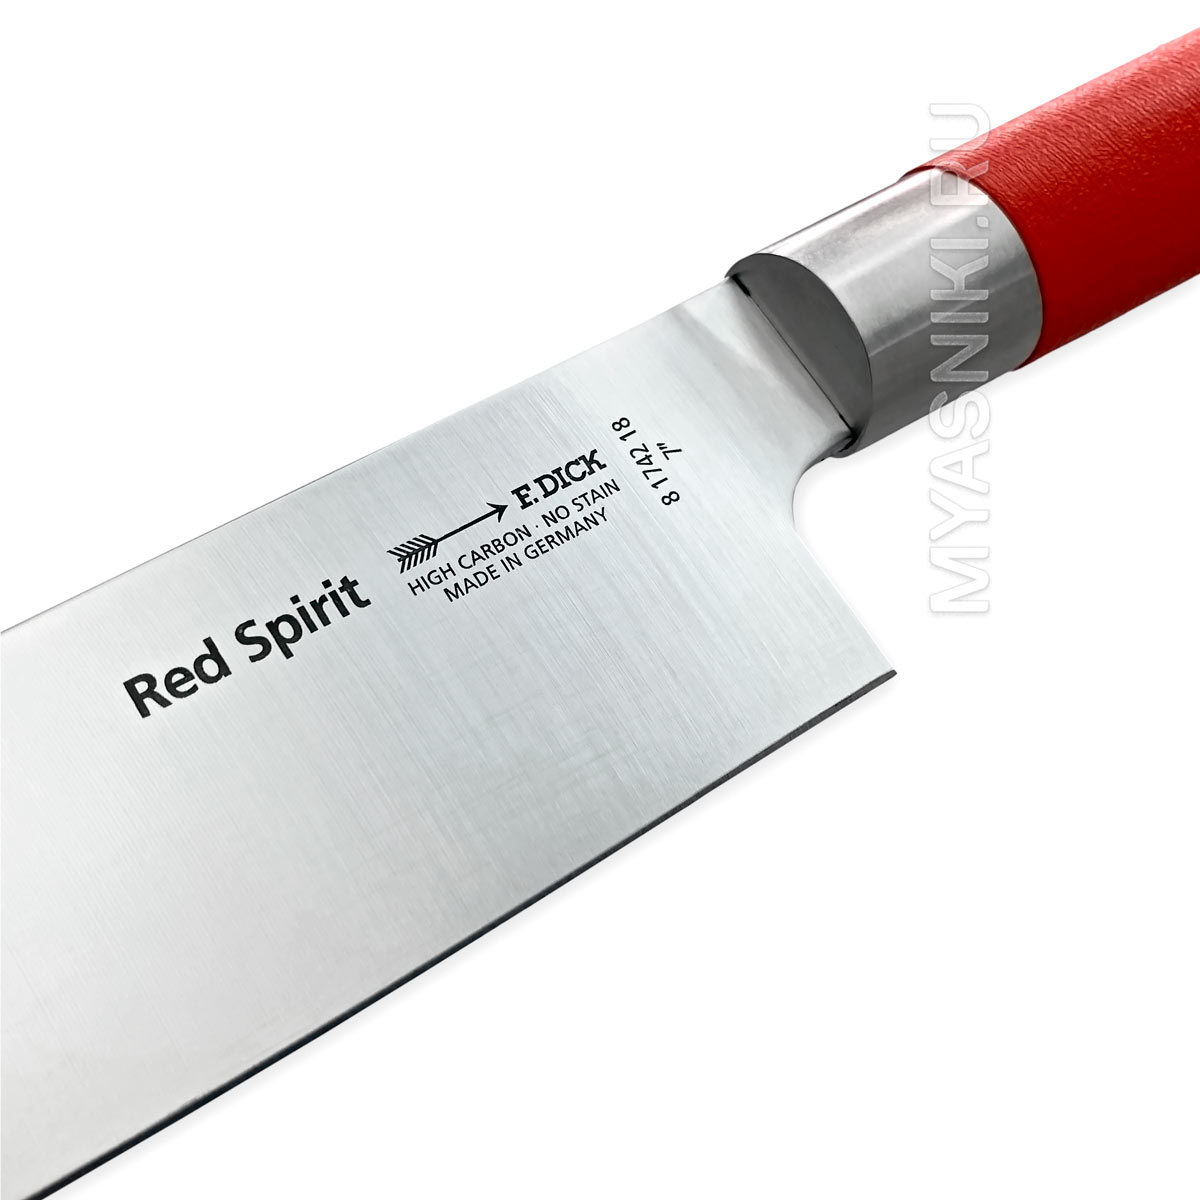 Сантоку с красной ручкой. Нож f dick Active Cat для чистки овощей 9 см купить. F dick